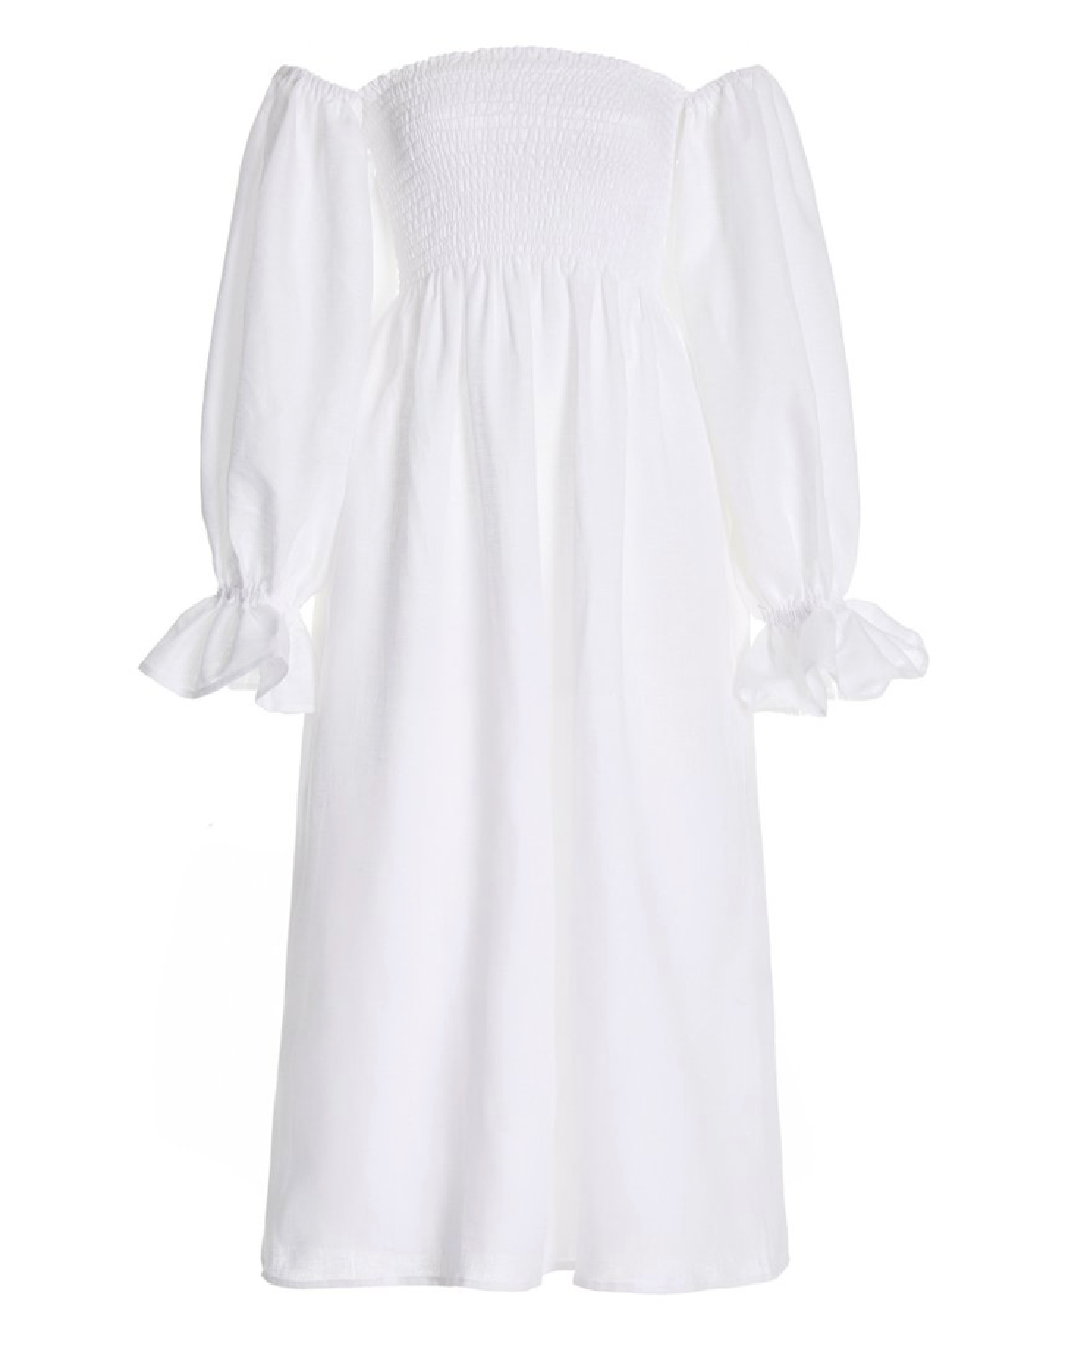 12 White Summer Dresses – Natalie Yerger